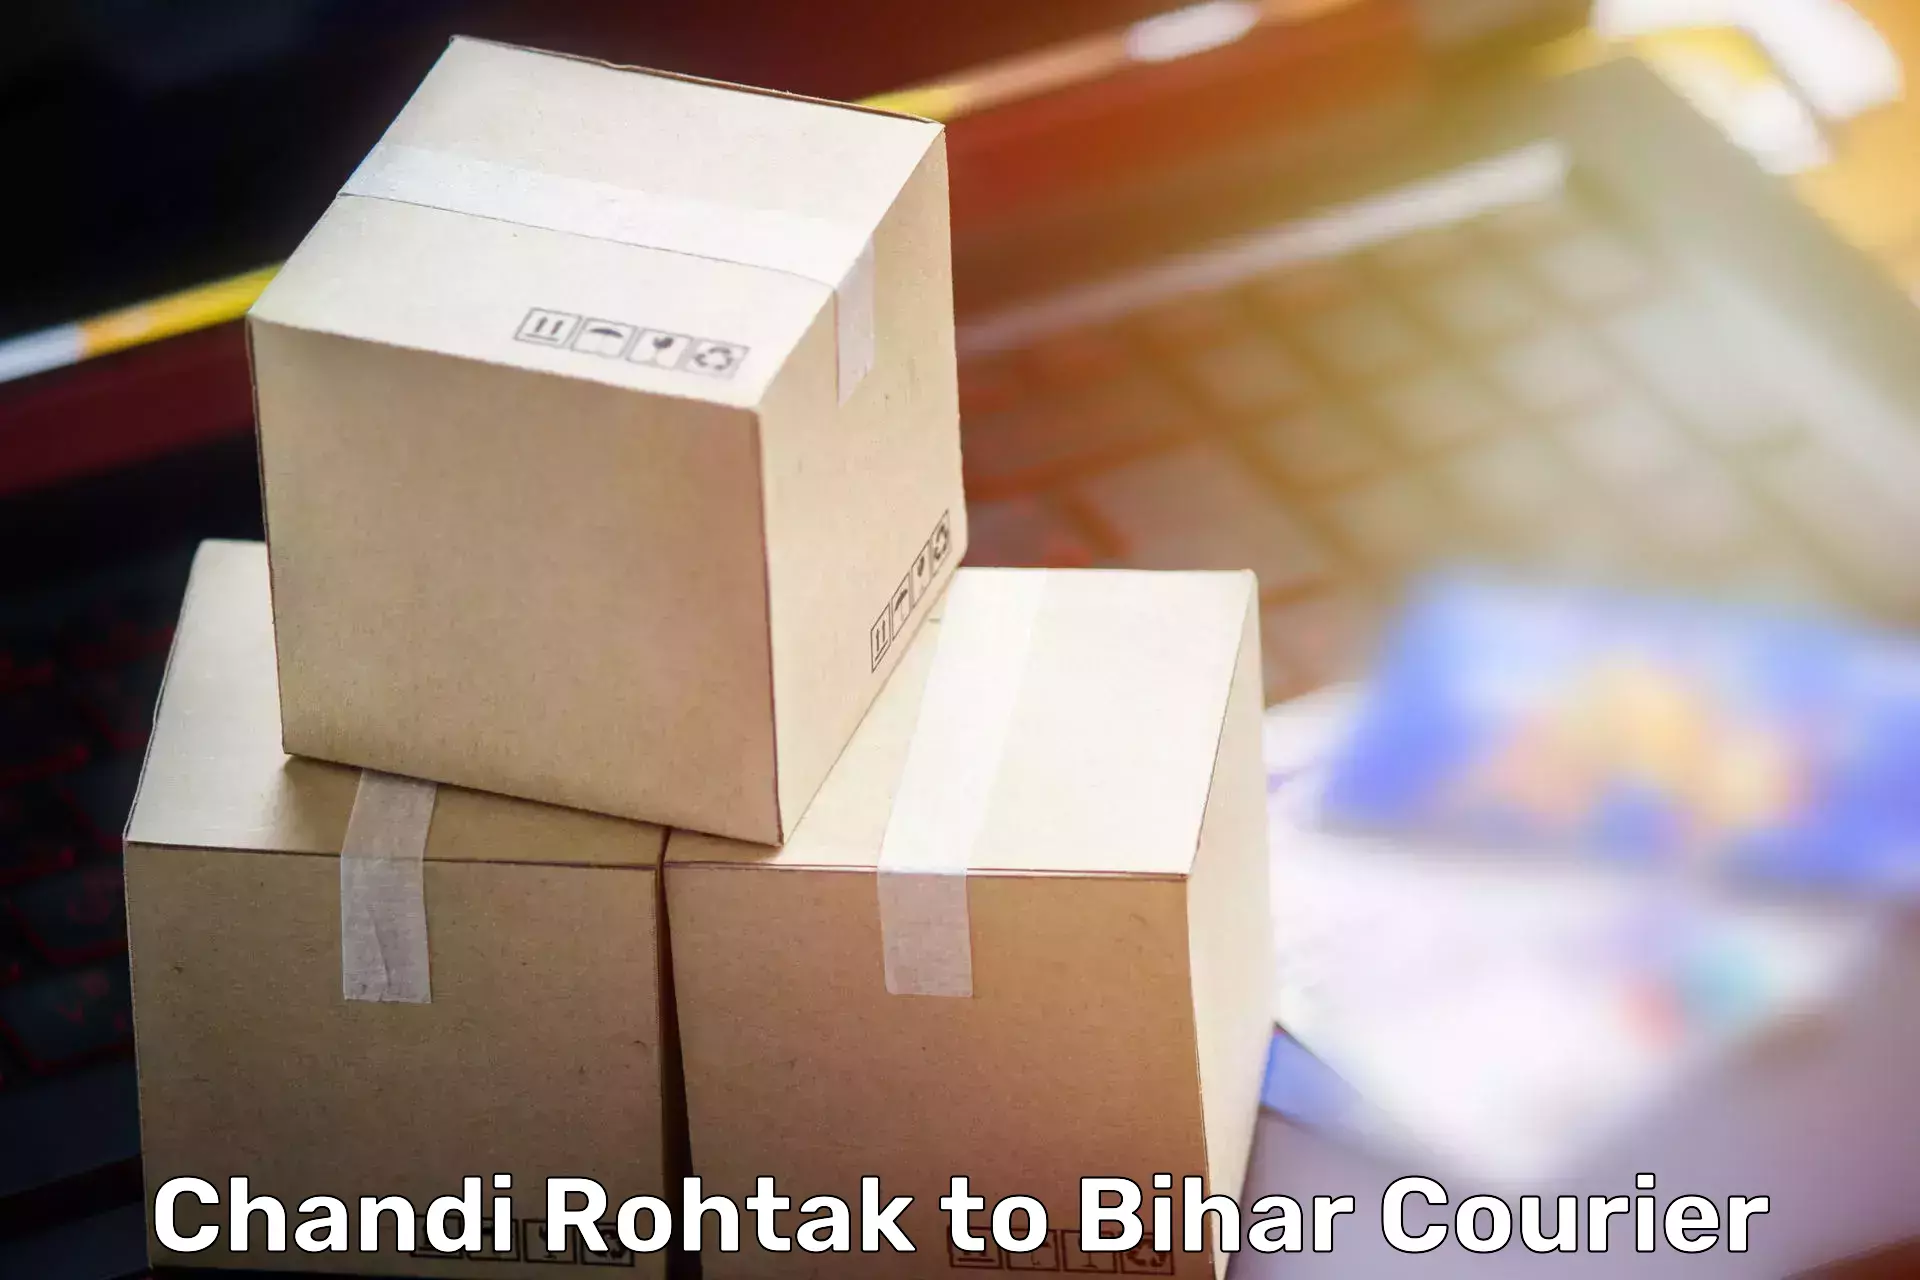 Furniture delivery service Chandi Rohtak to Chandi Nalanda